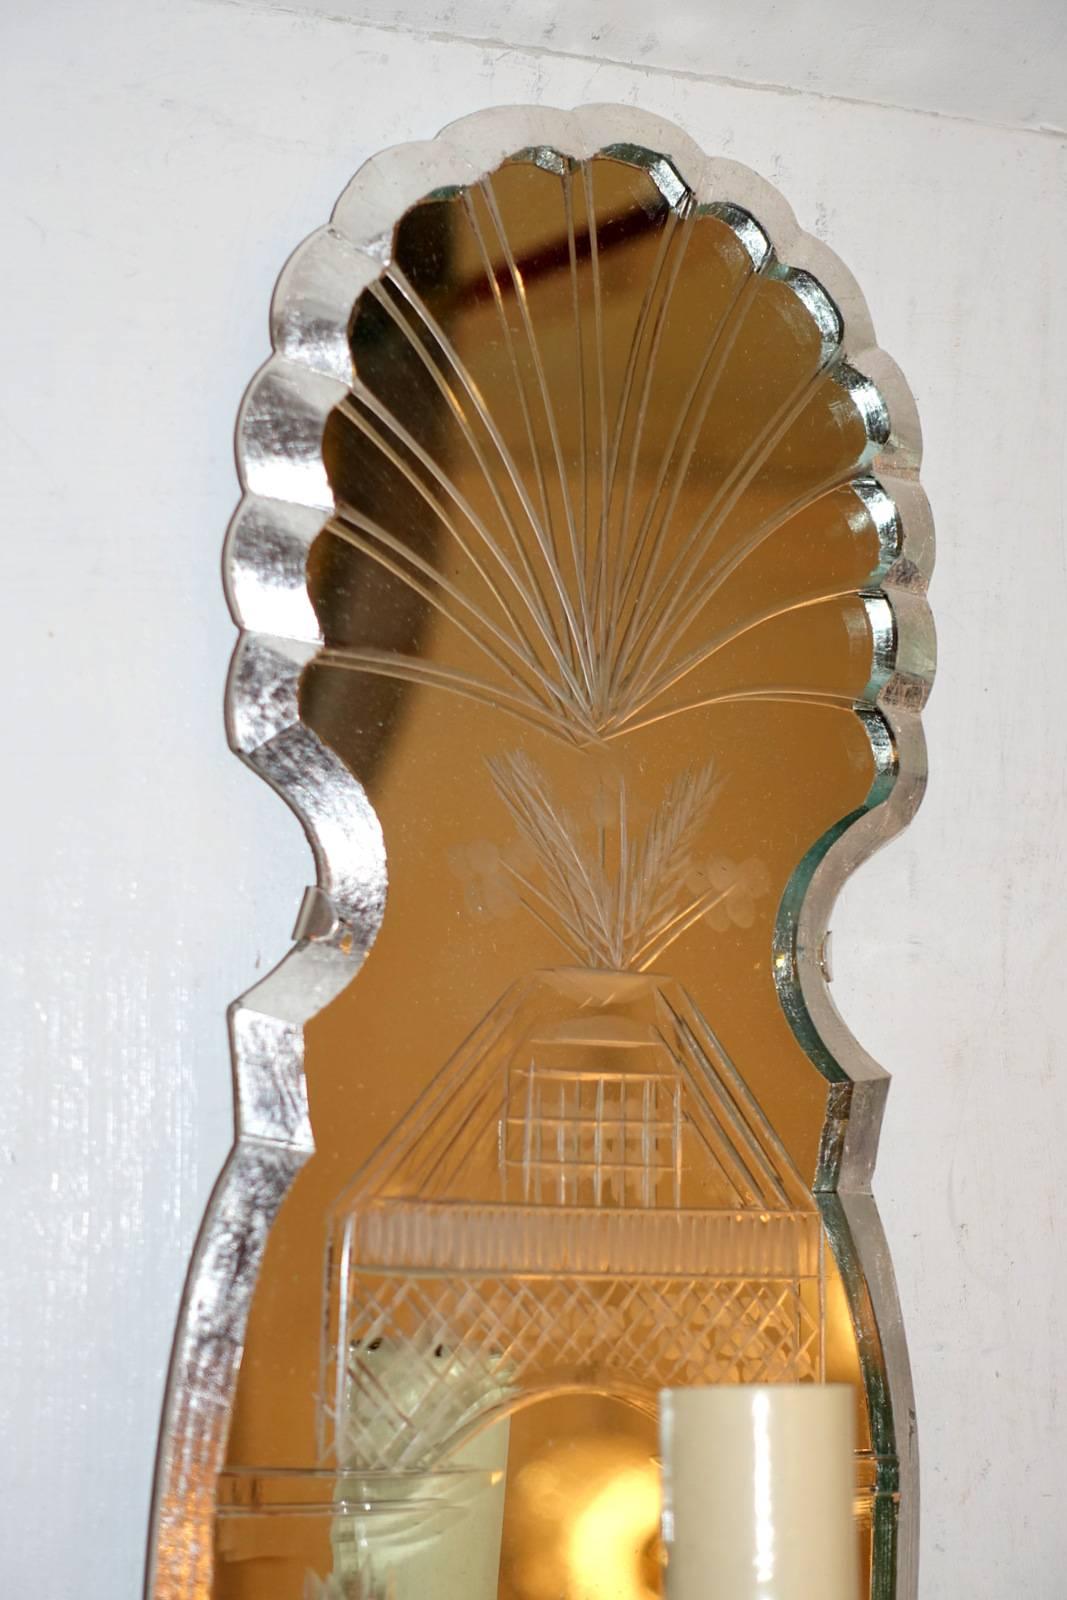 Ein Satz von vier circa 1940er Jahre Französisch geätzten Spiegel einzelne leichte Wandleuchten mit Silber-Finish. Verkauft in Paaren.

Abmessungen:
Höhe: 17